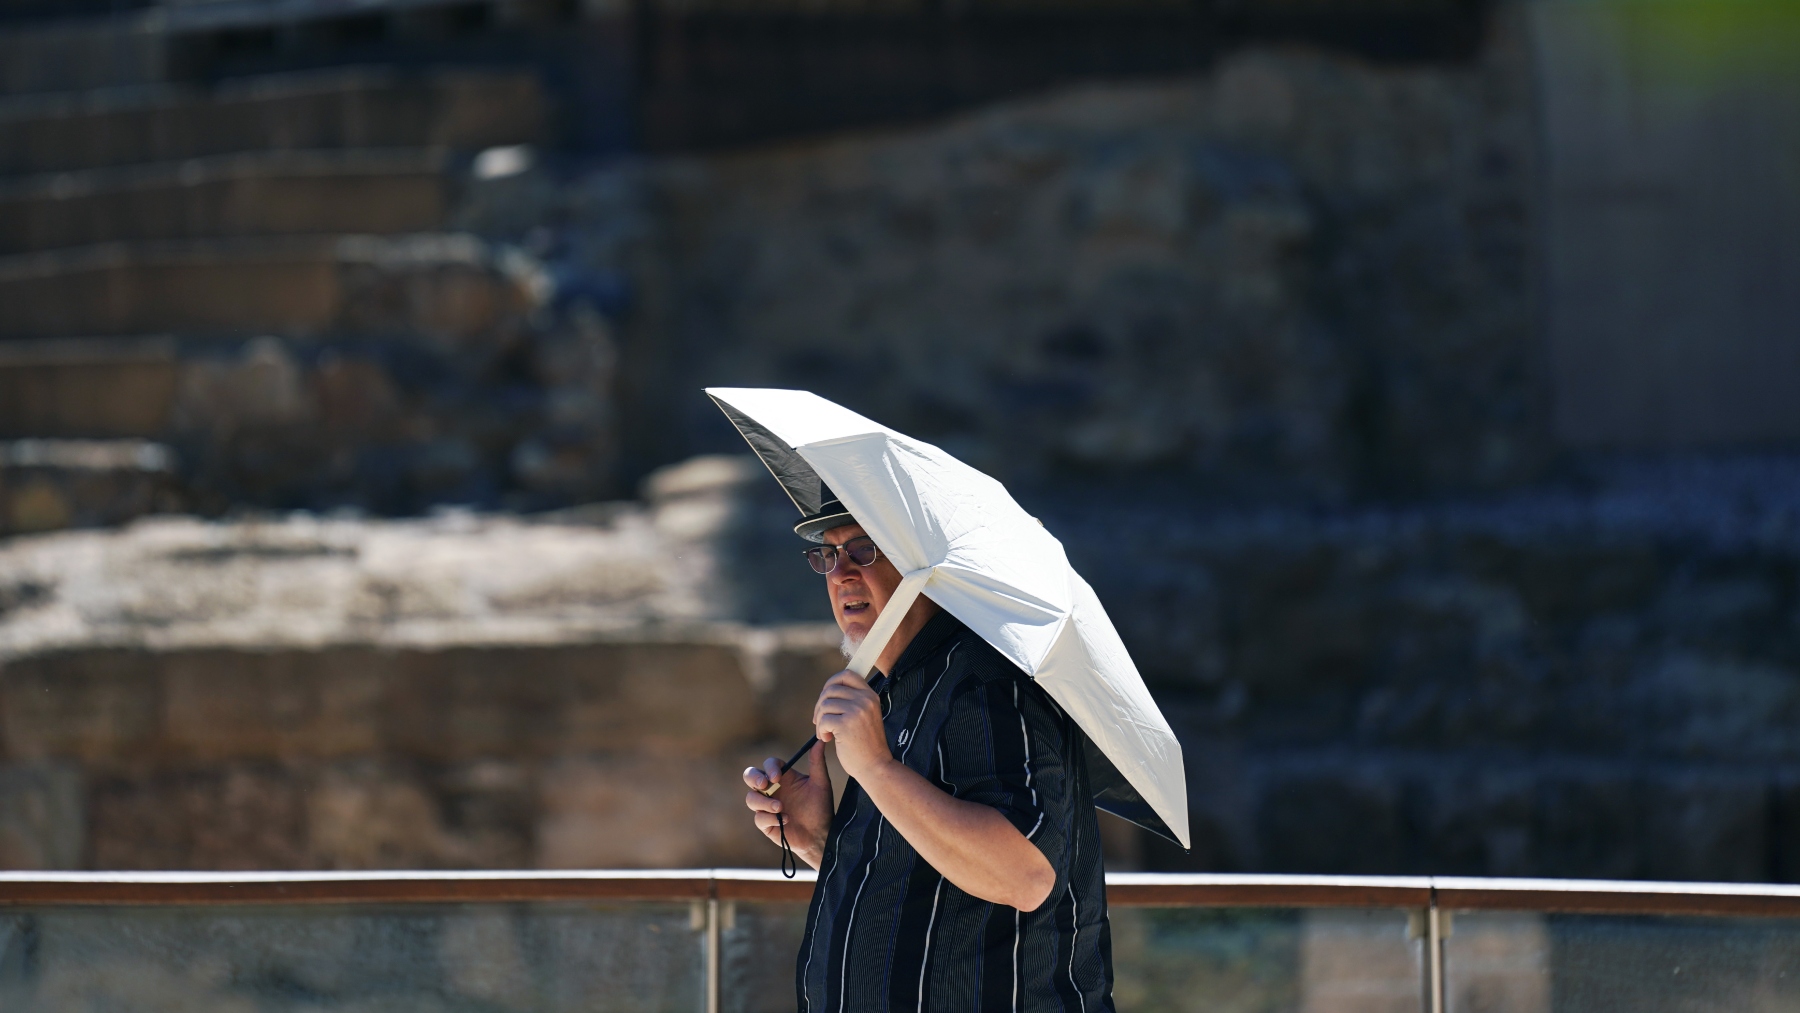 Un ciudadano se protege del calor con un paraguas.